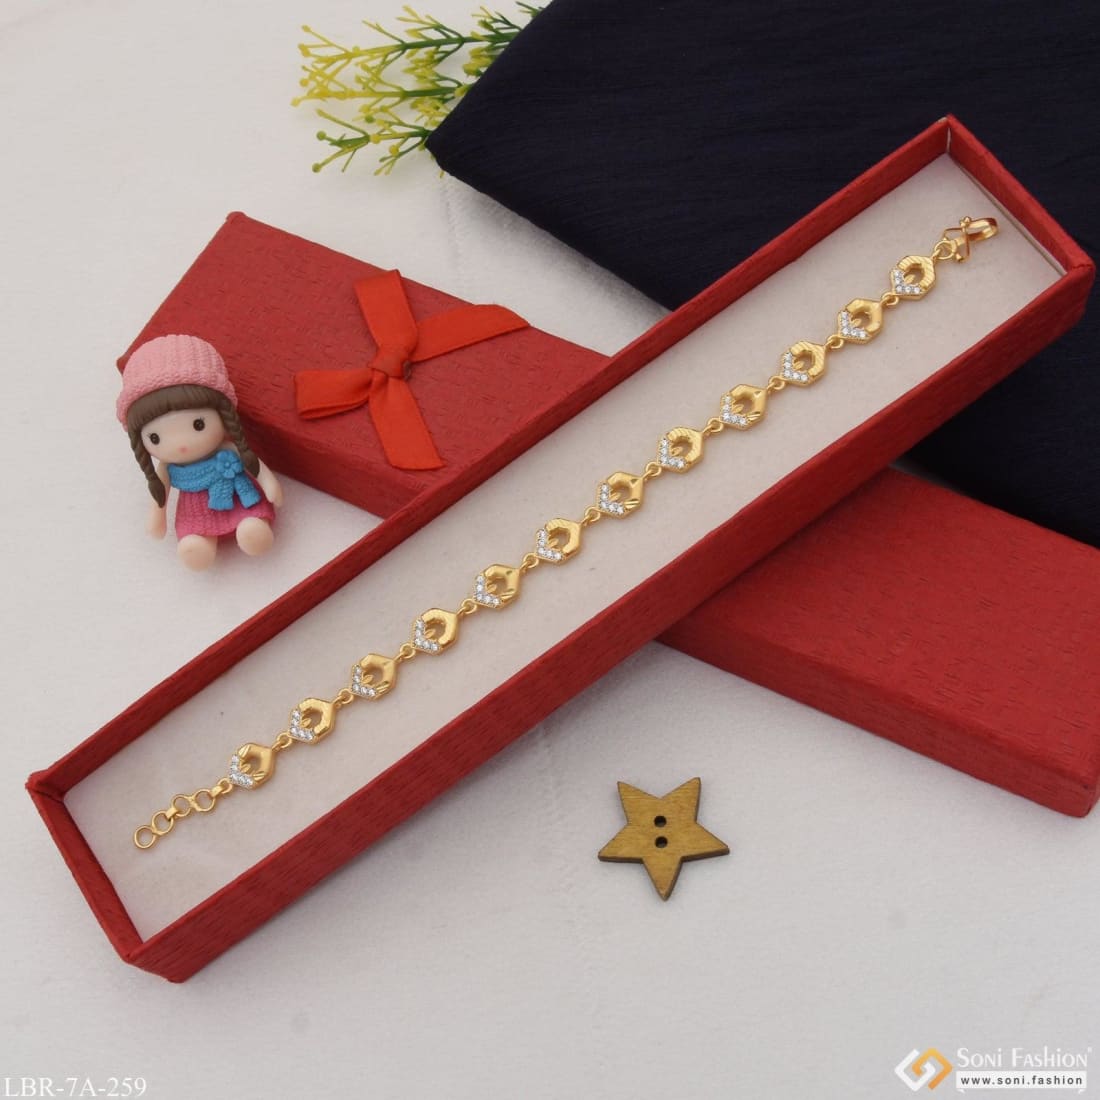 Pearl Bracelets for Girls & Heirloom Jewelry | Little Girls Pearls – Page 2  – Little Girl's Pearls